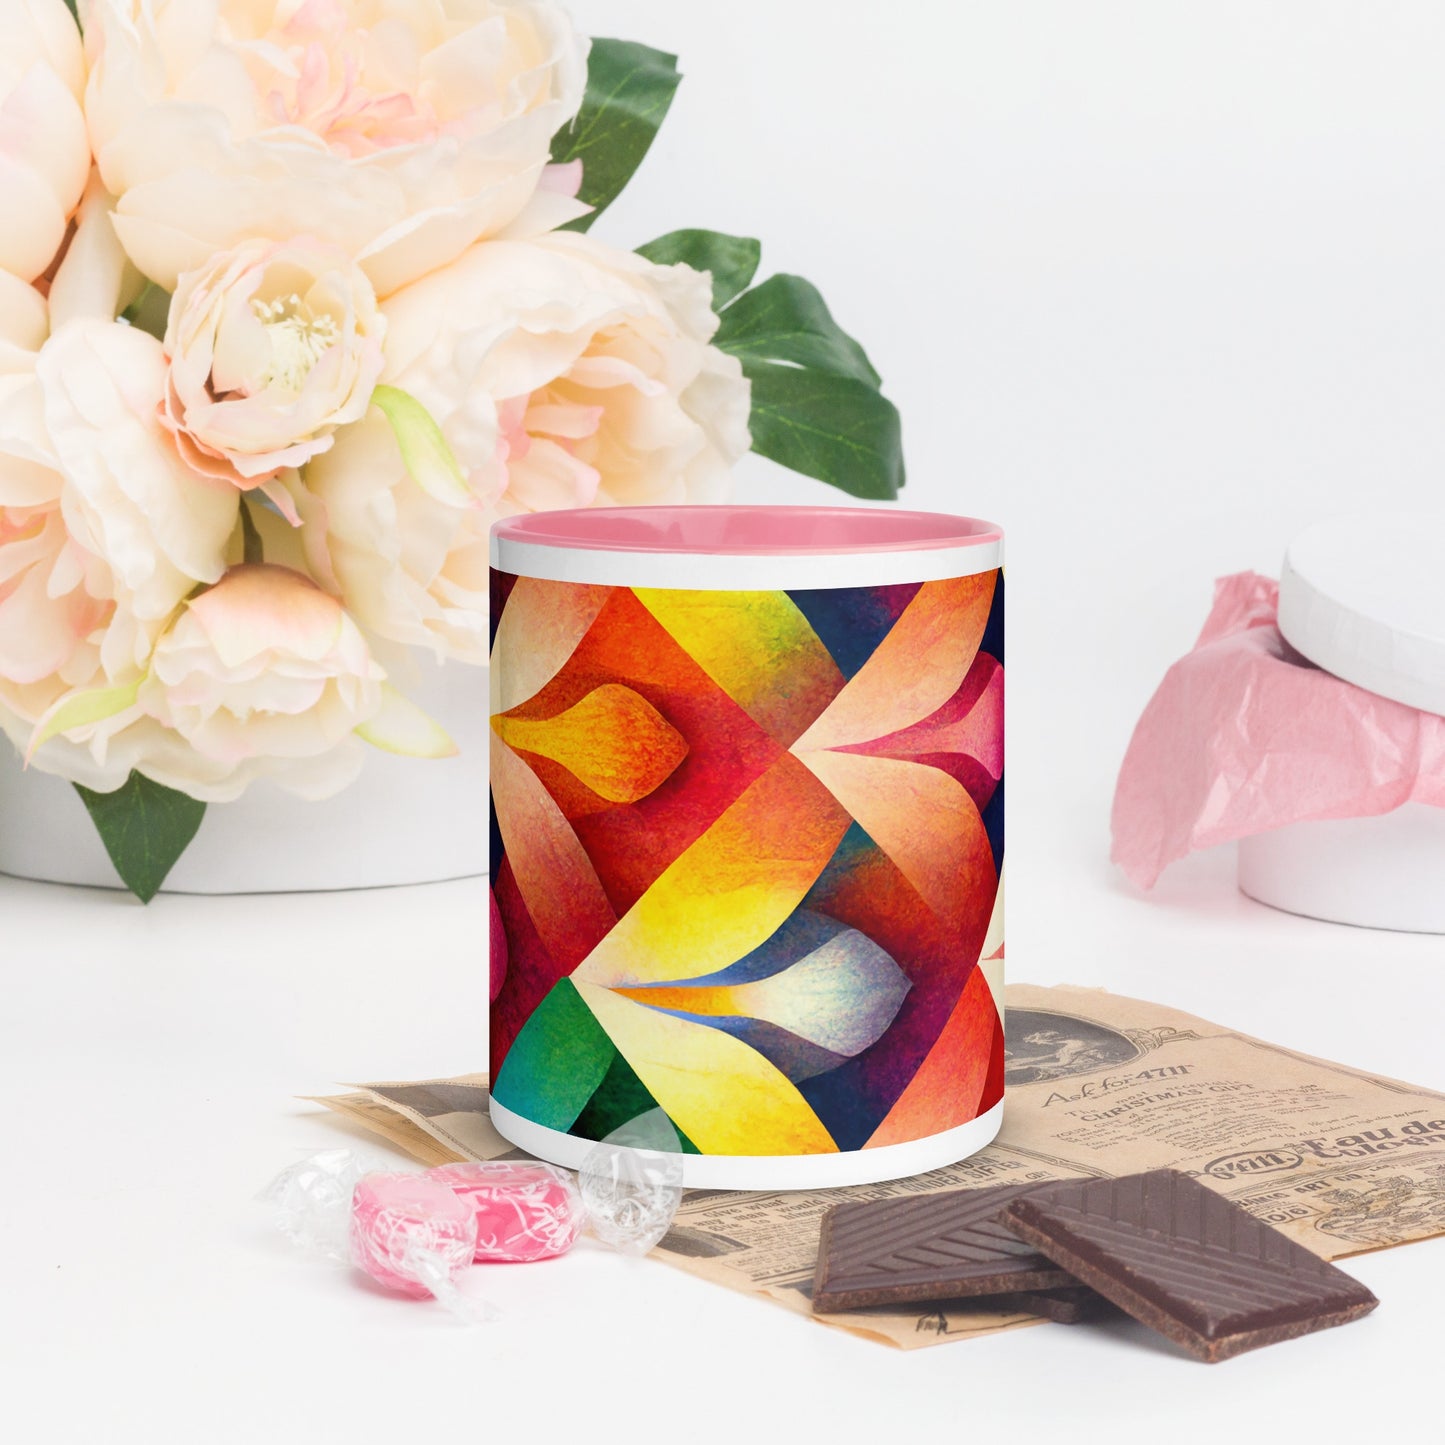 Petals Ceramic Mug with Color Inside